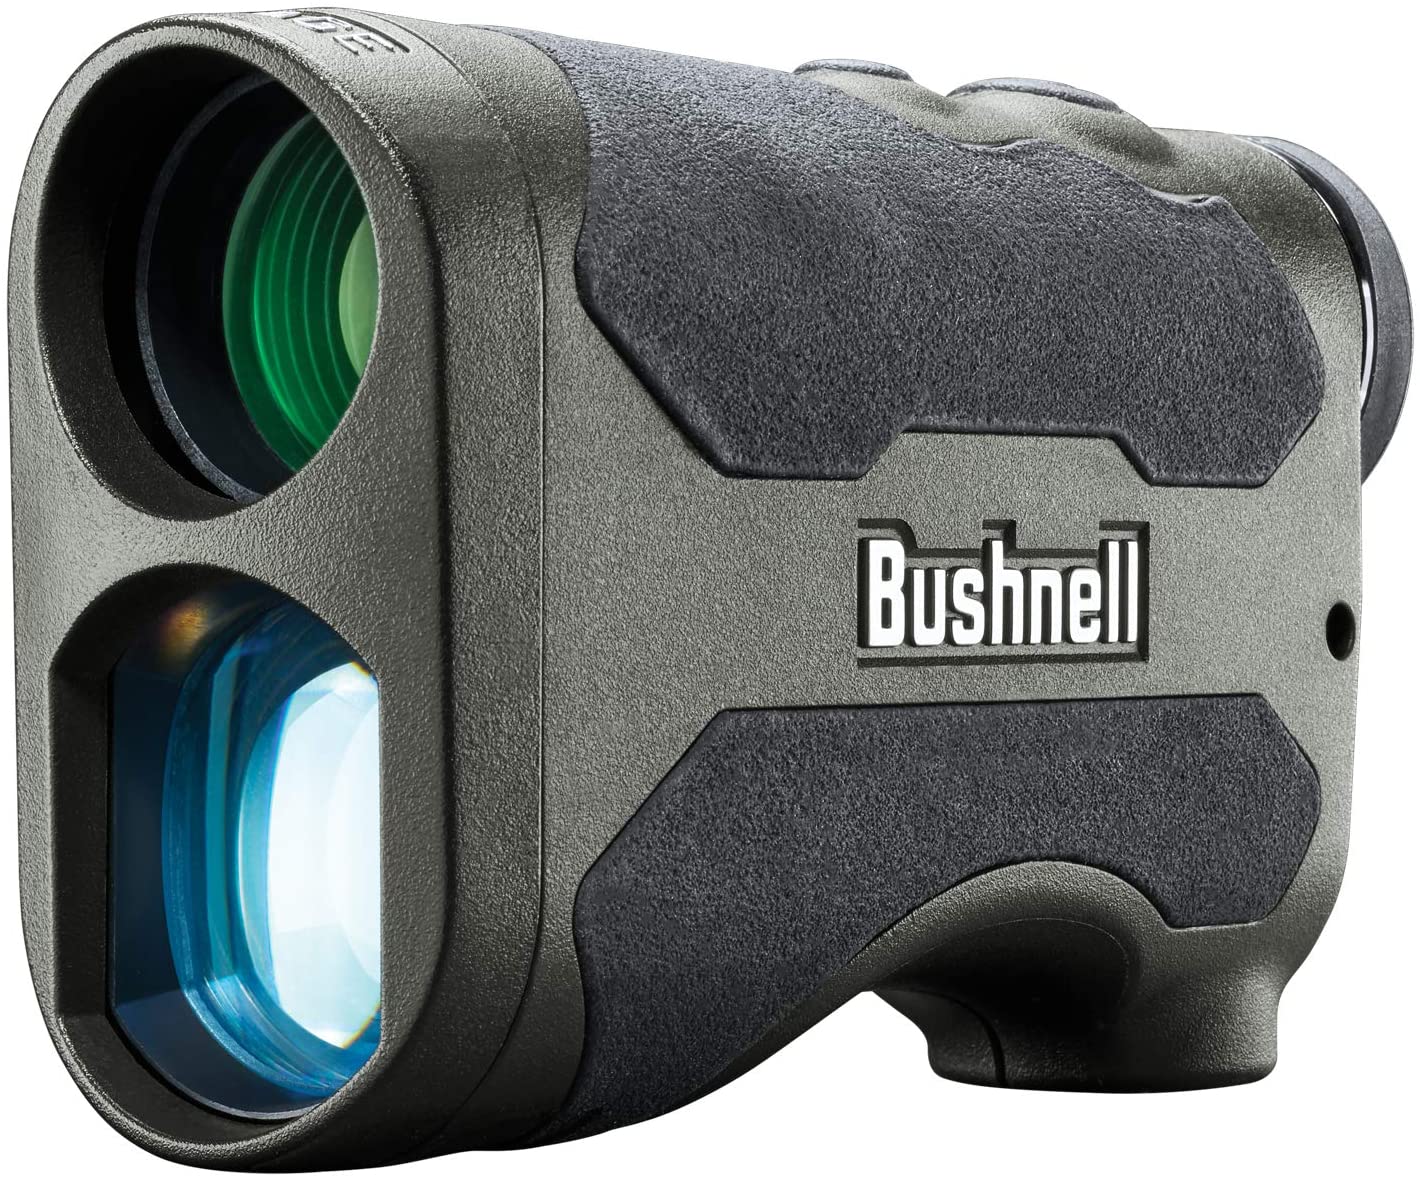 Bushnell Engage LE 1700 Deer Hunting Rangefinder